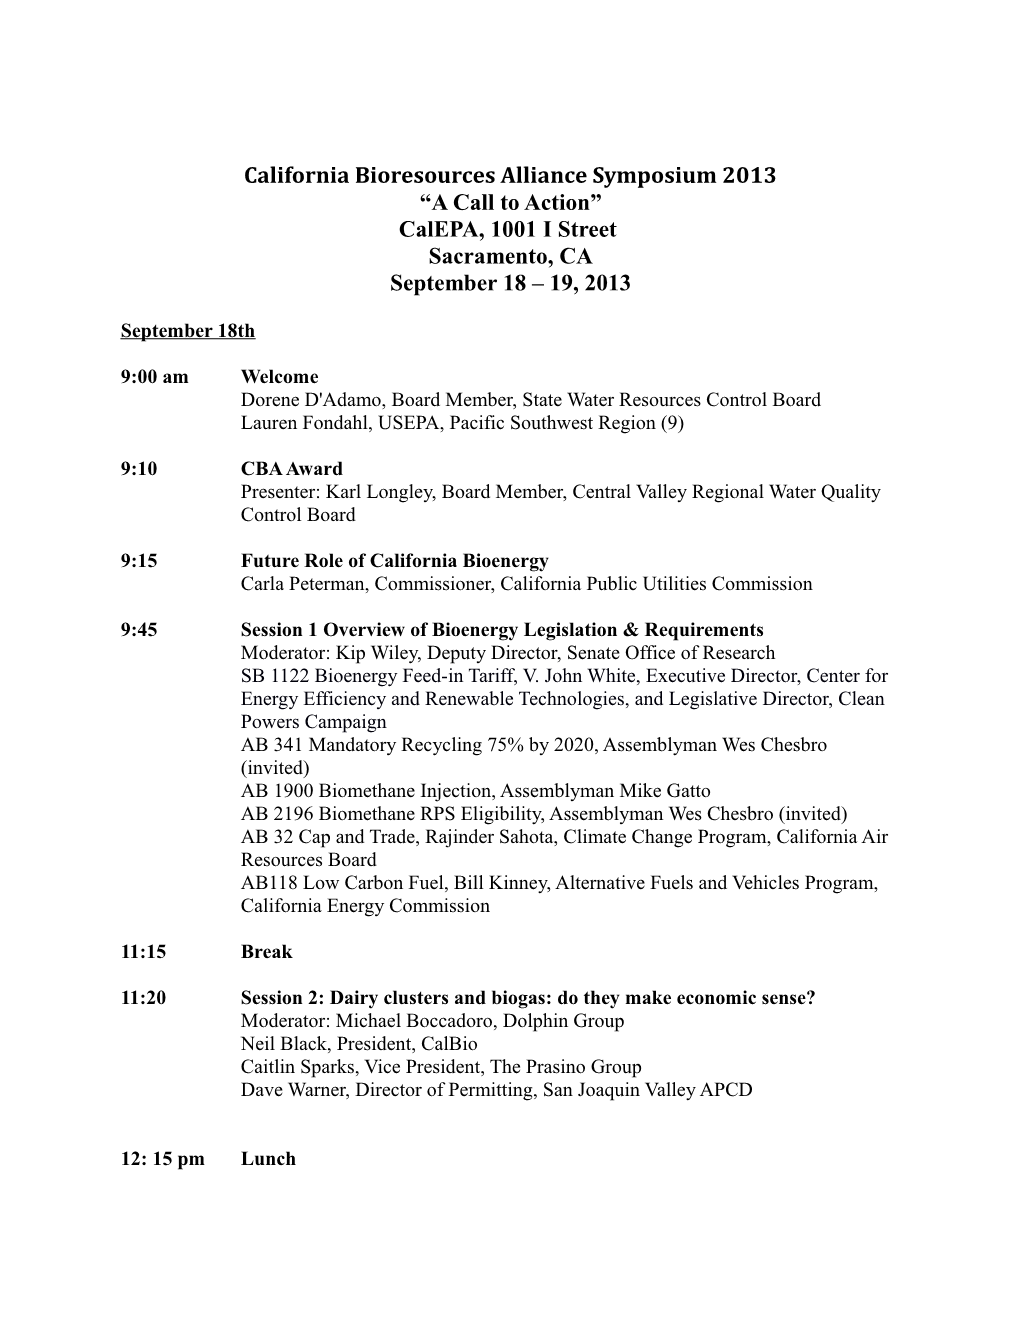 California Biosolids Symposium Agenda